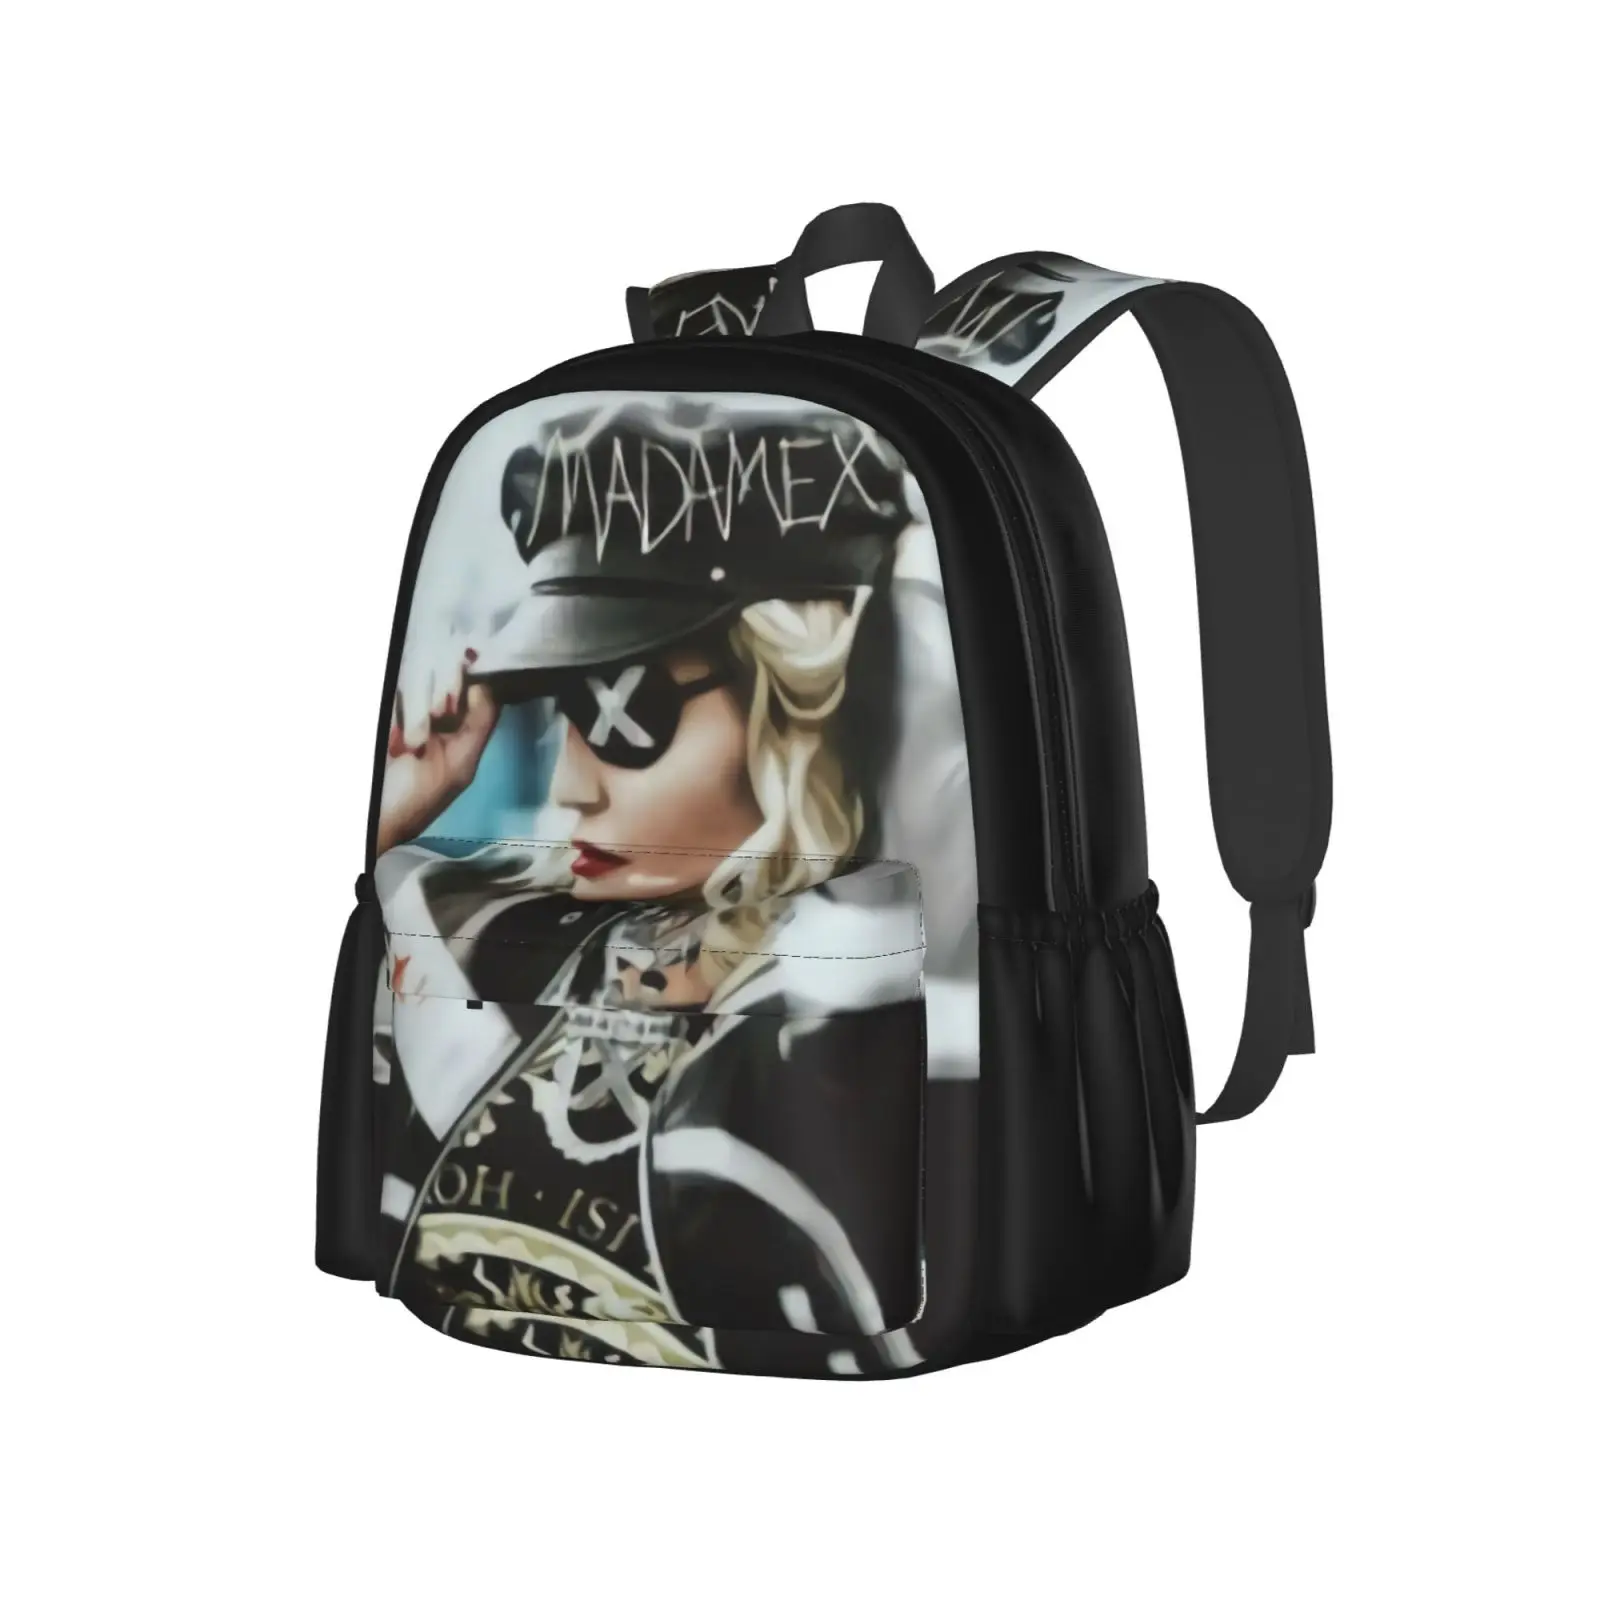 

Мужская сумка Madonna ток X Tour To Tha, женская сумка из шнура, рюкзаки для женщин, детский рюкзак, тканевые сумки, чемоданы